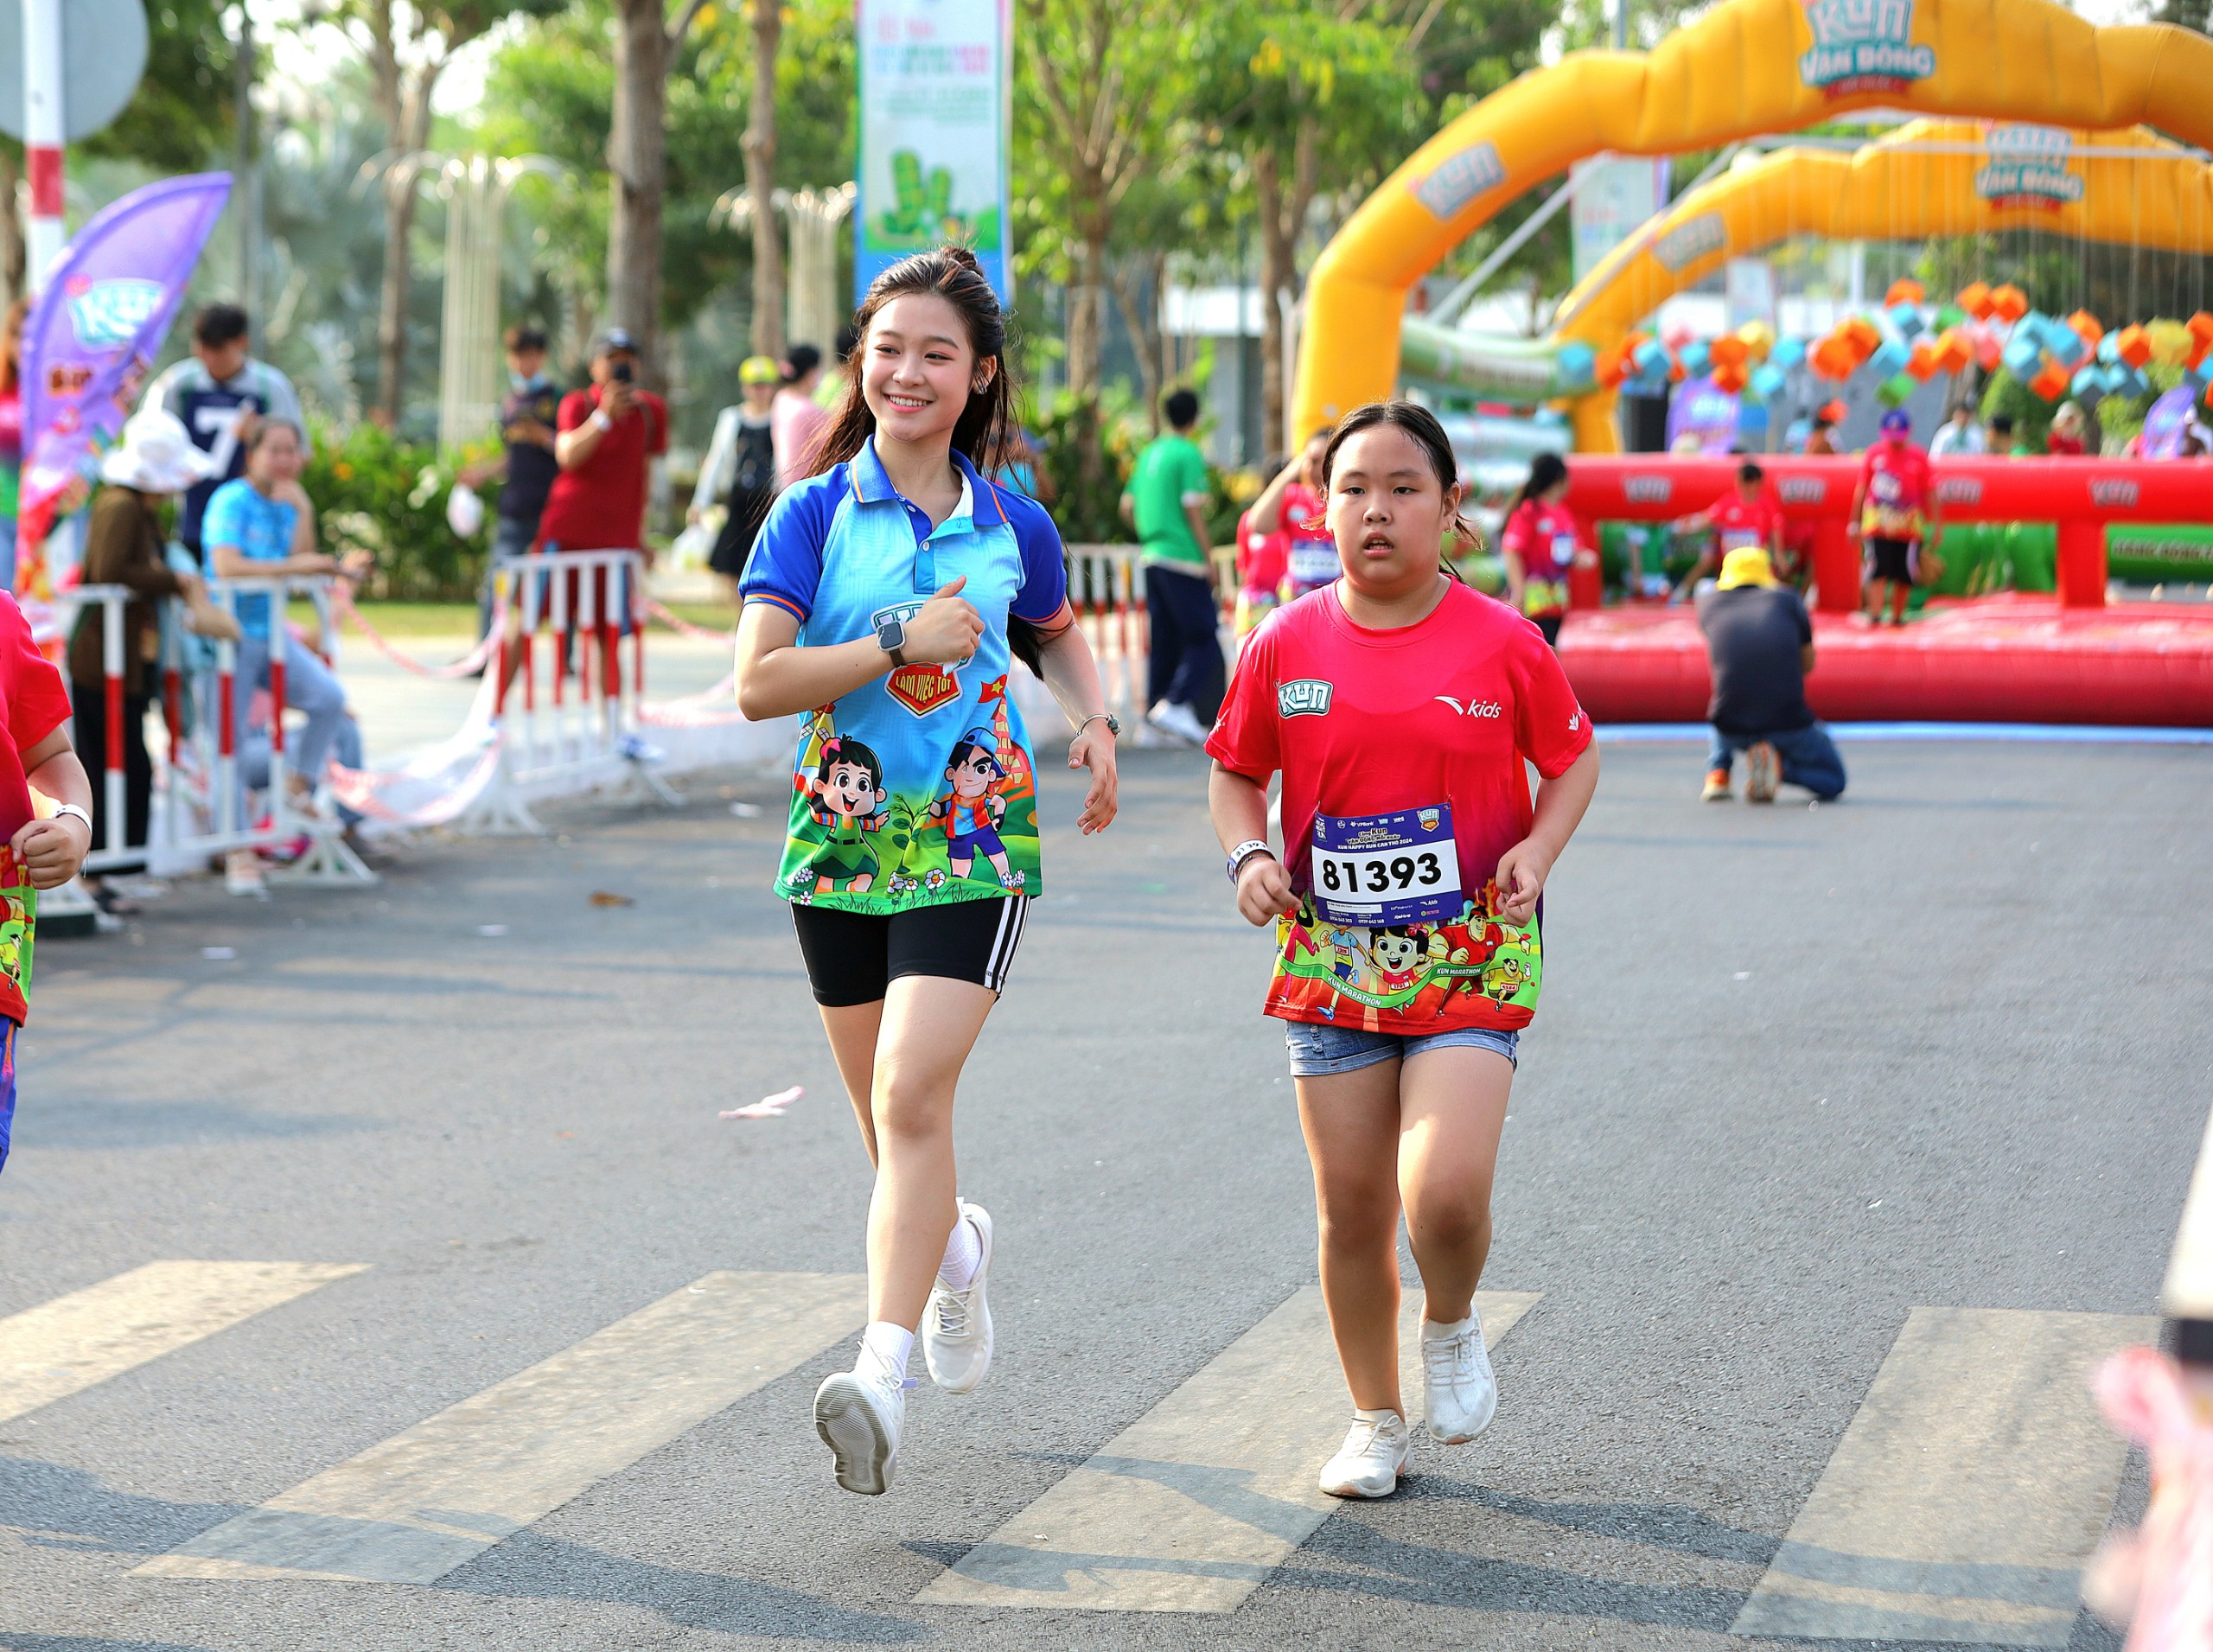 Ca sĩ, diễn viên nhí Bảo Ngọc tham gia chạy cùng các em nhỏ.